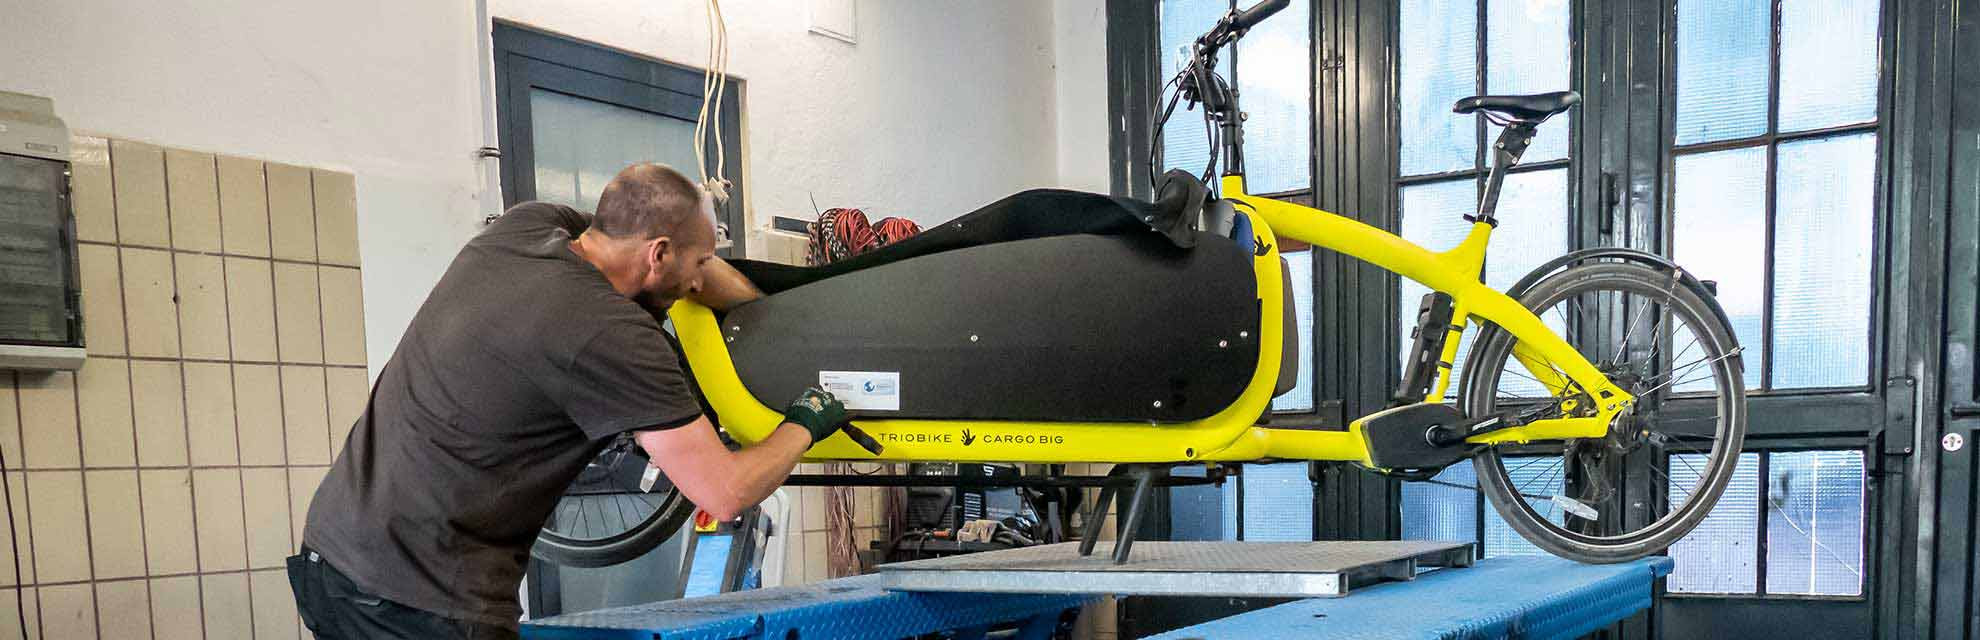 Fahrradtechniker schraubt in seiner Werkstatt an einem Cargobike